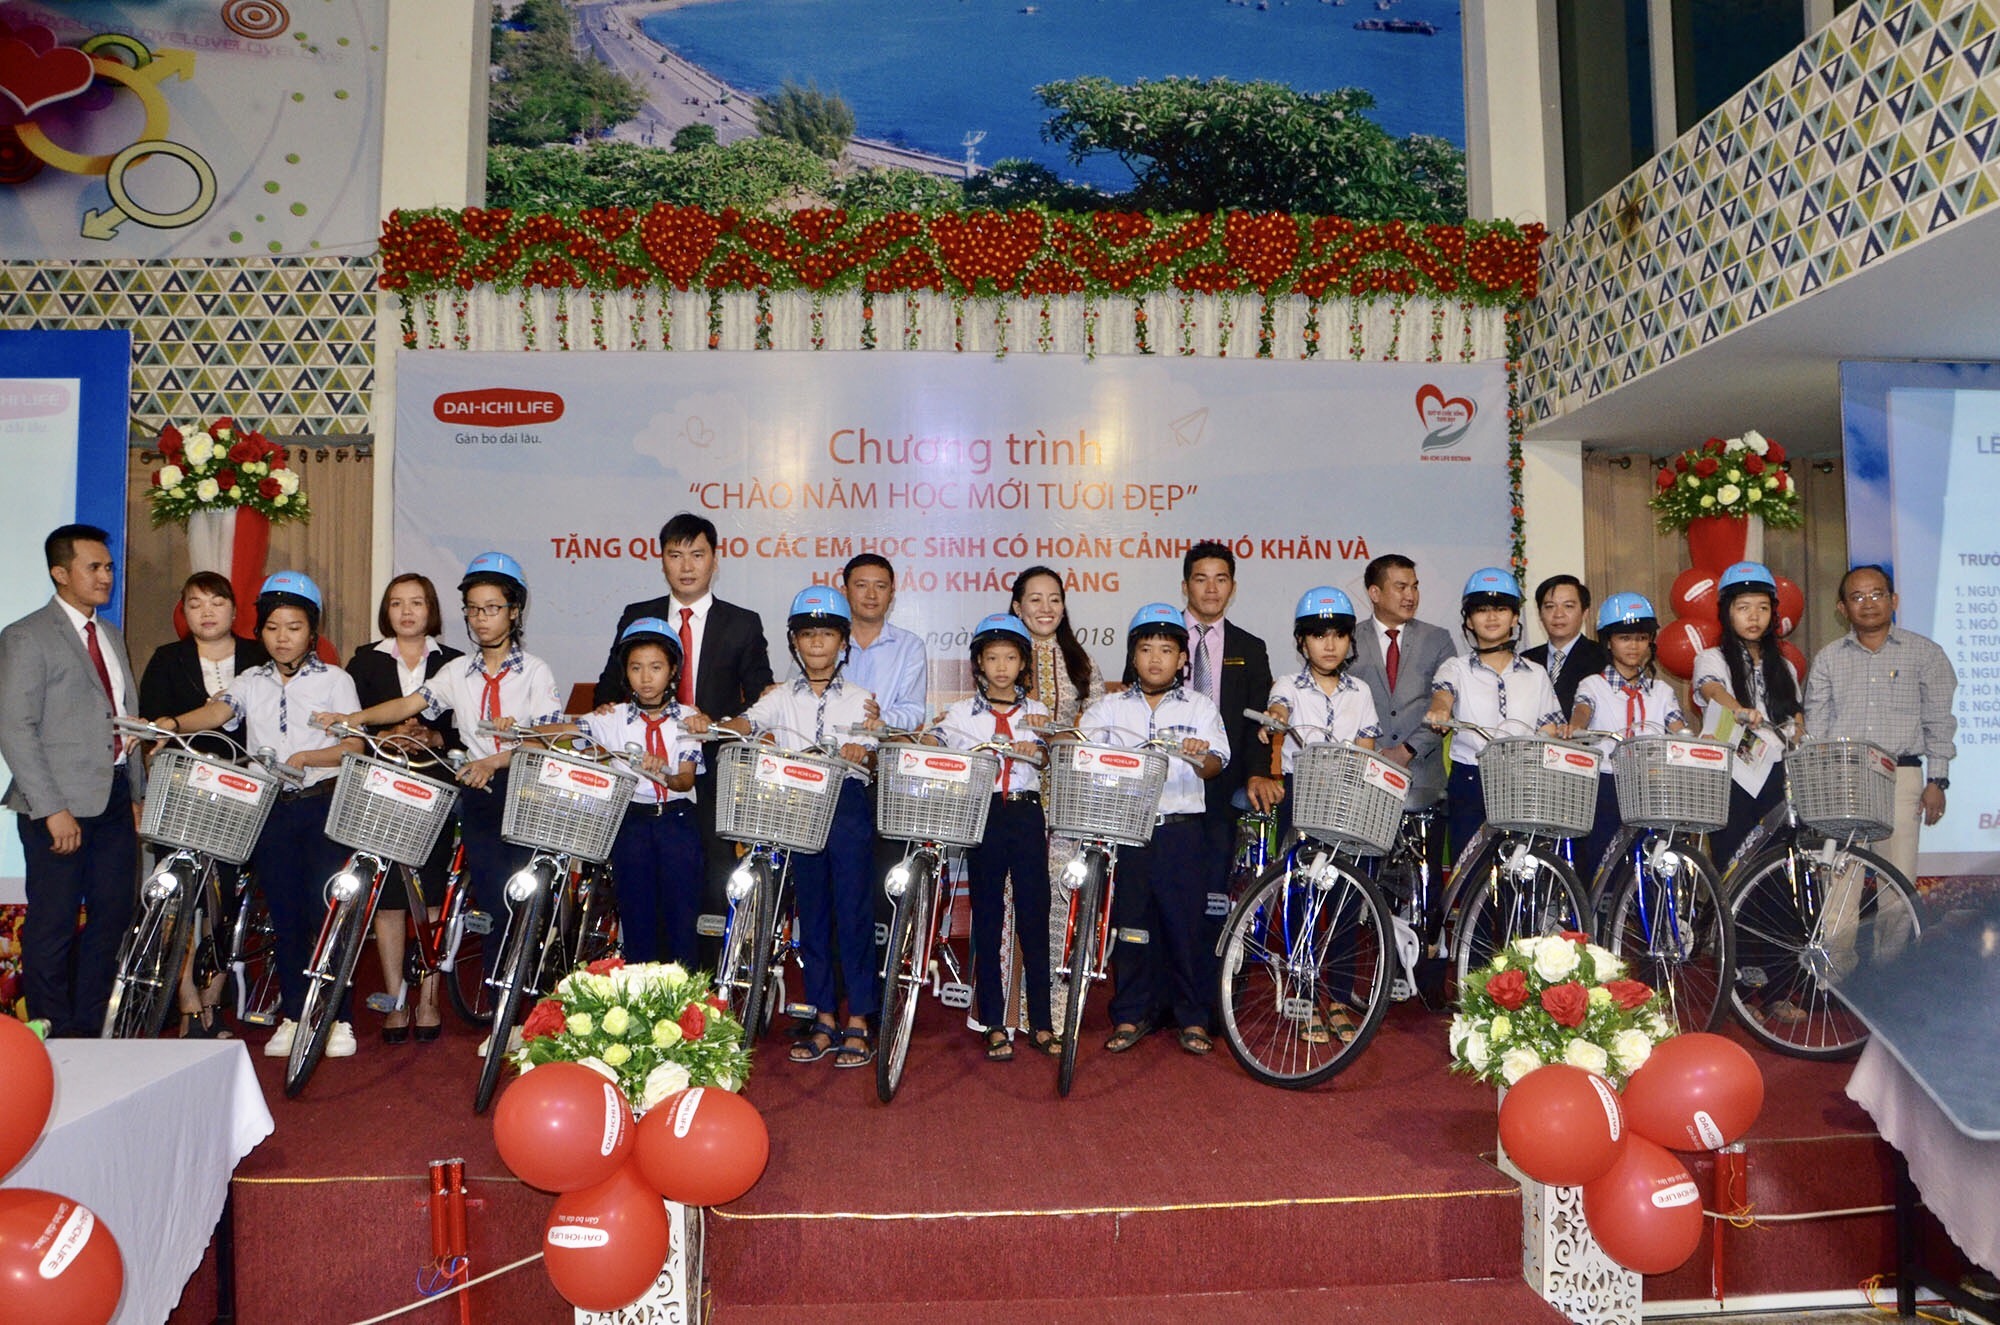 Dịp này, Dai-ichi Life tặng 10 chiếc xe đạp cho HS Trường THCS Phước Nguyên.